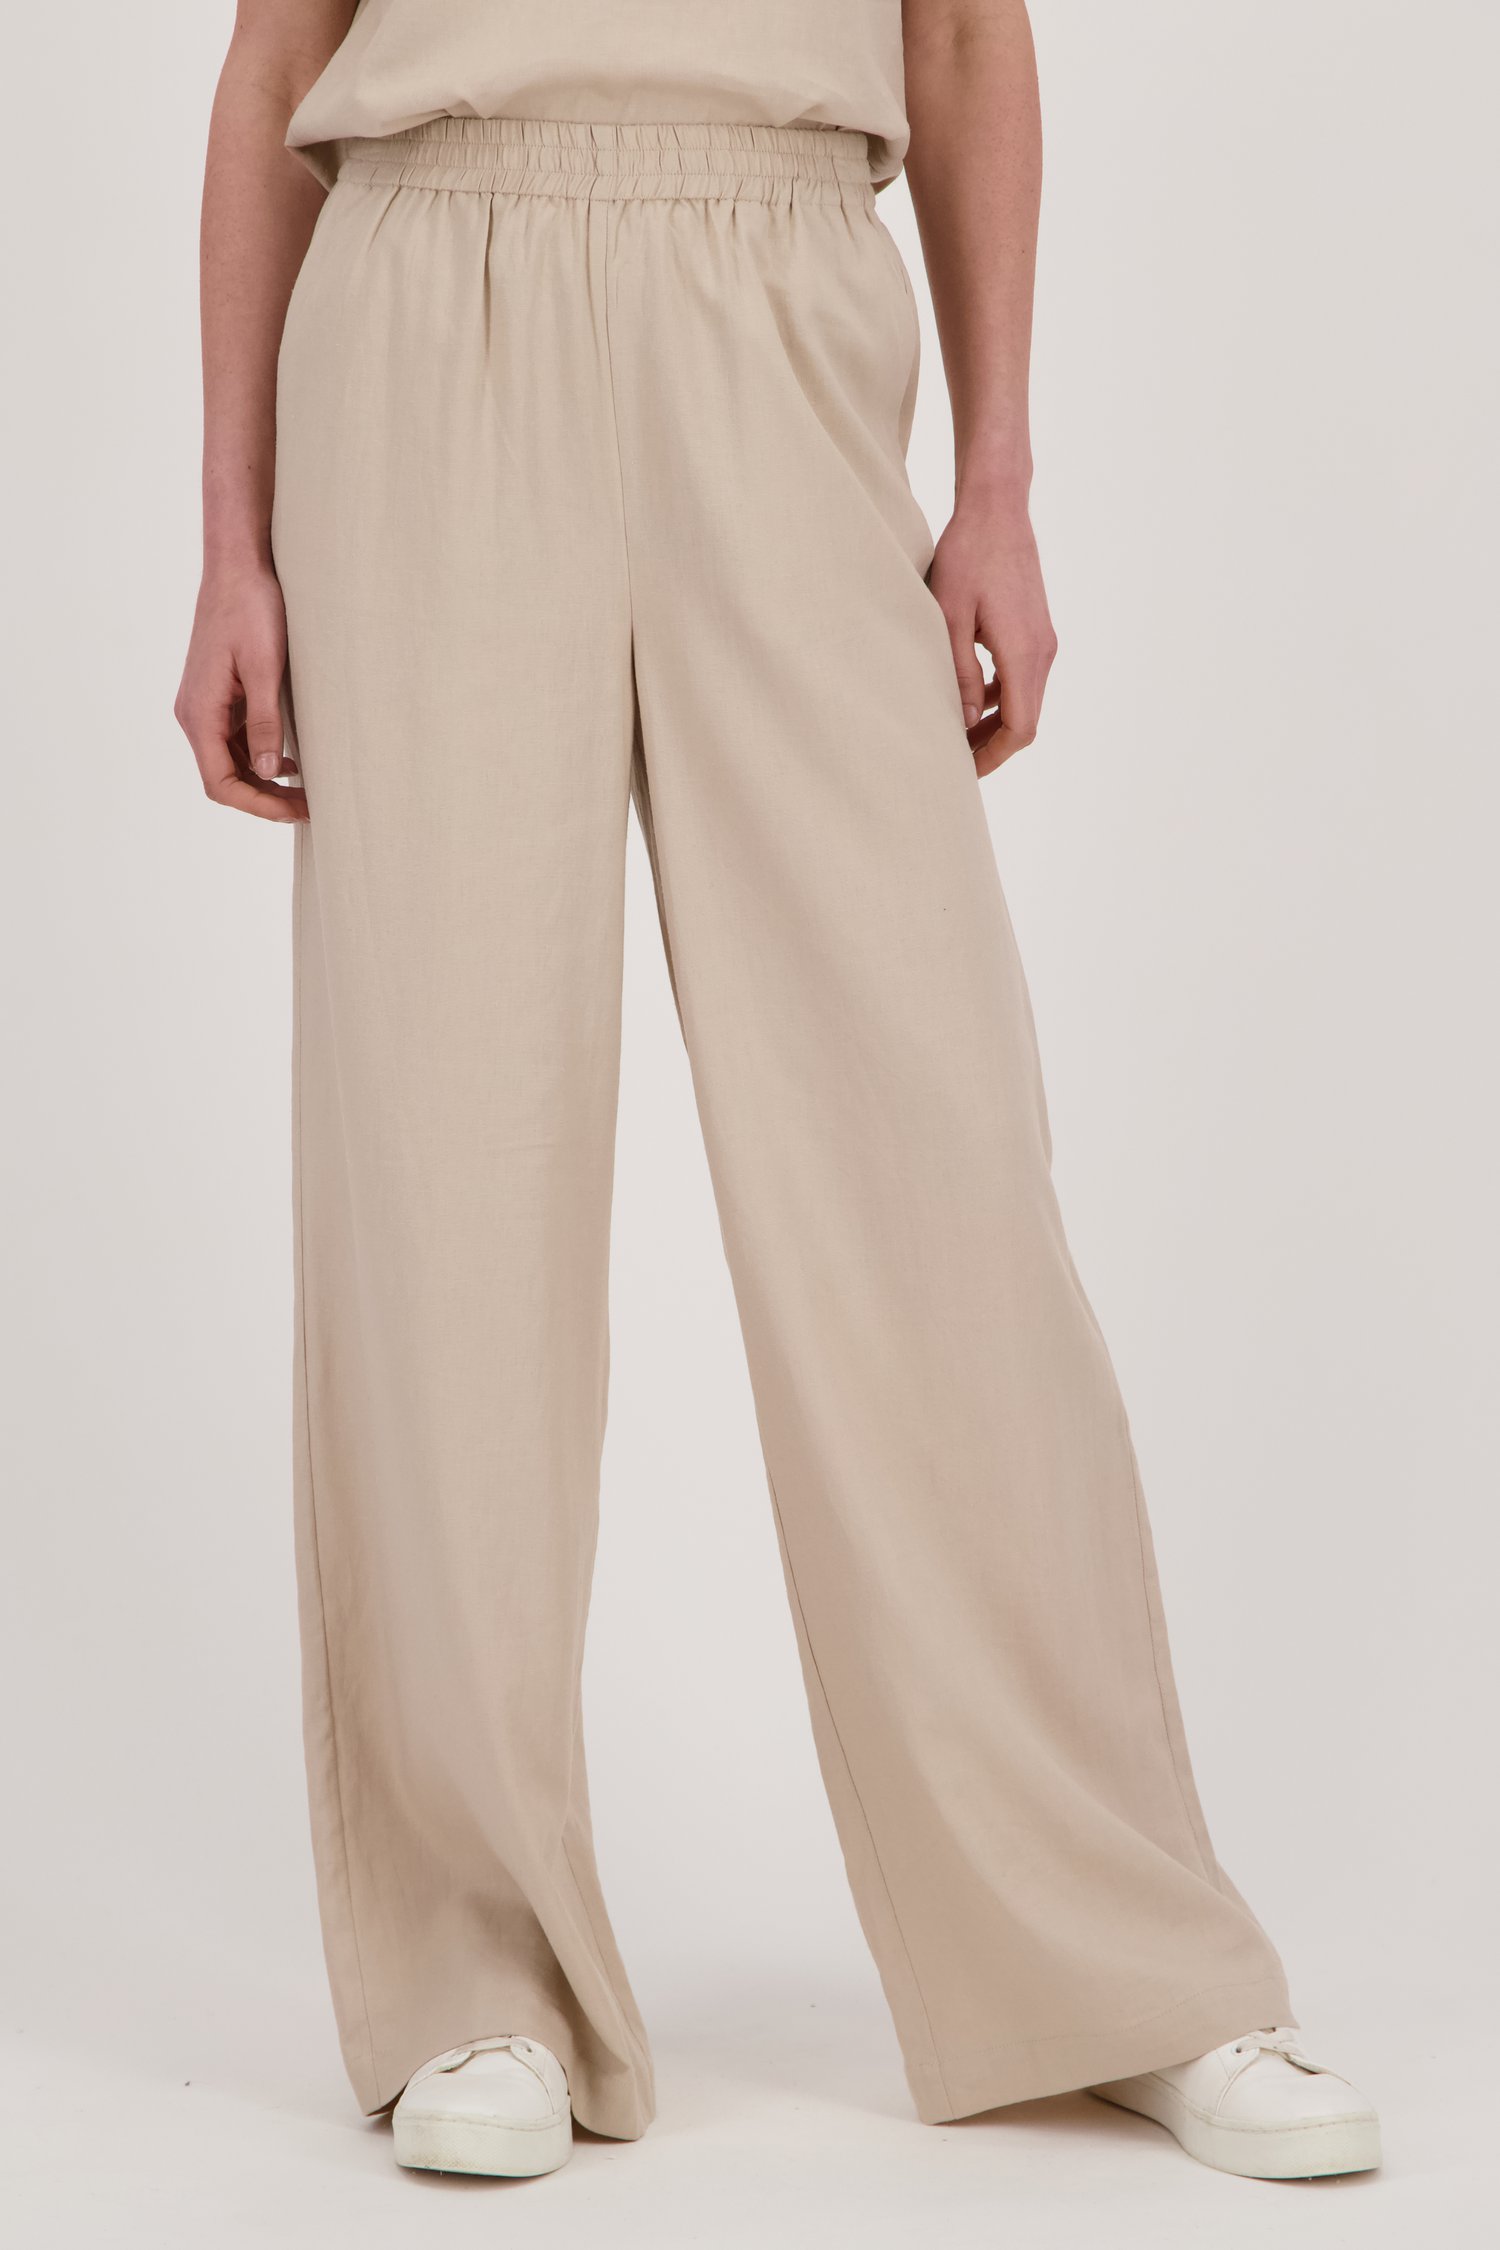 Pantalon en lin beige clair 	 de Liberty Island pour Femmes